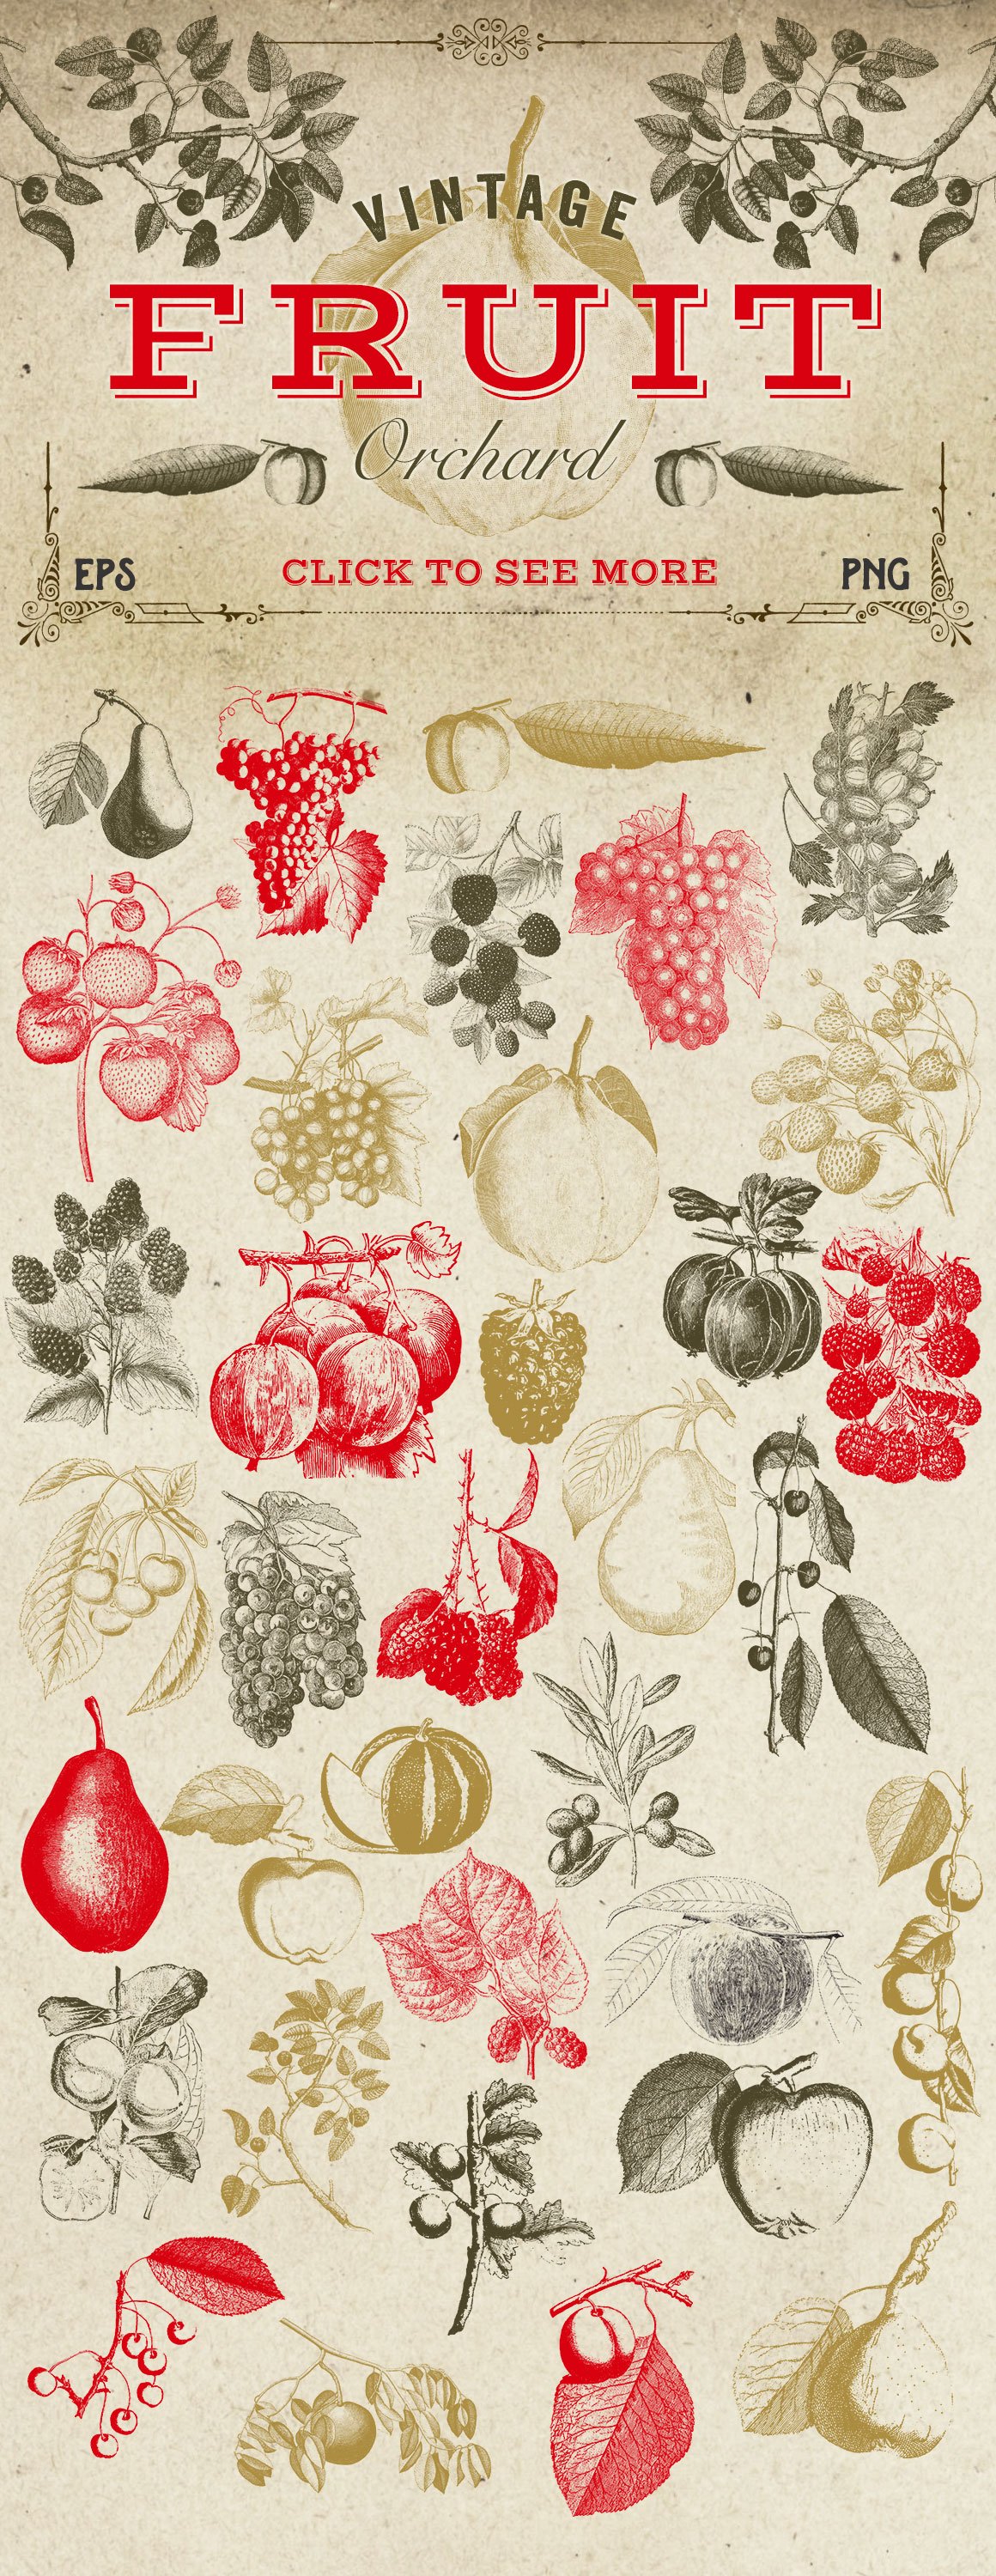 Strawberries, cherries, blackberries depicted in vintage style.